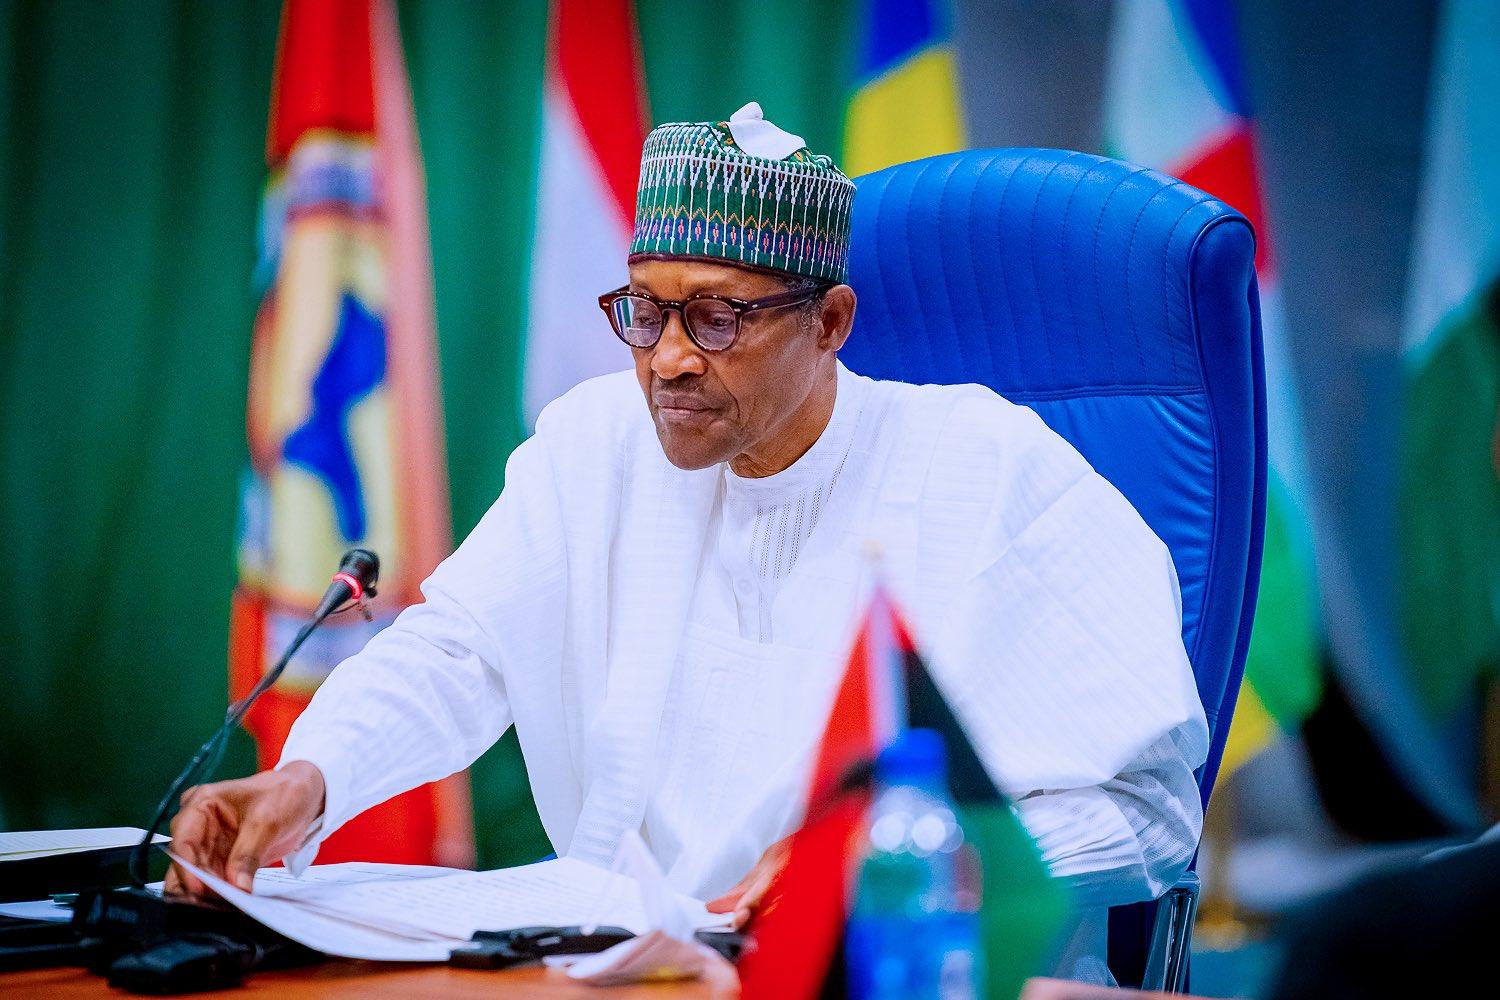 Le président du Nigeria critique les dirigeants qui prolongent la durée de leur mandat.